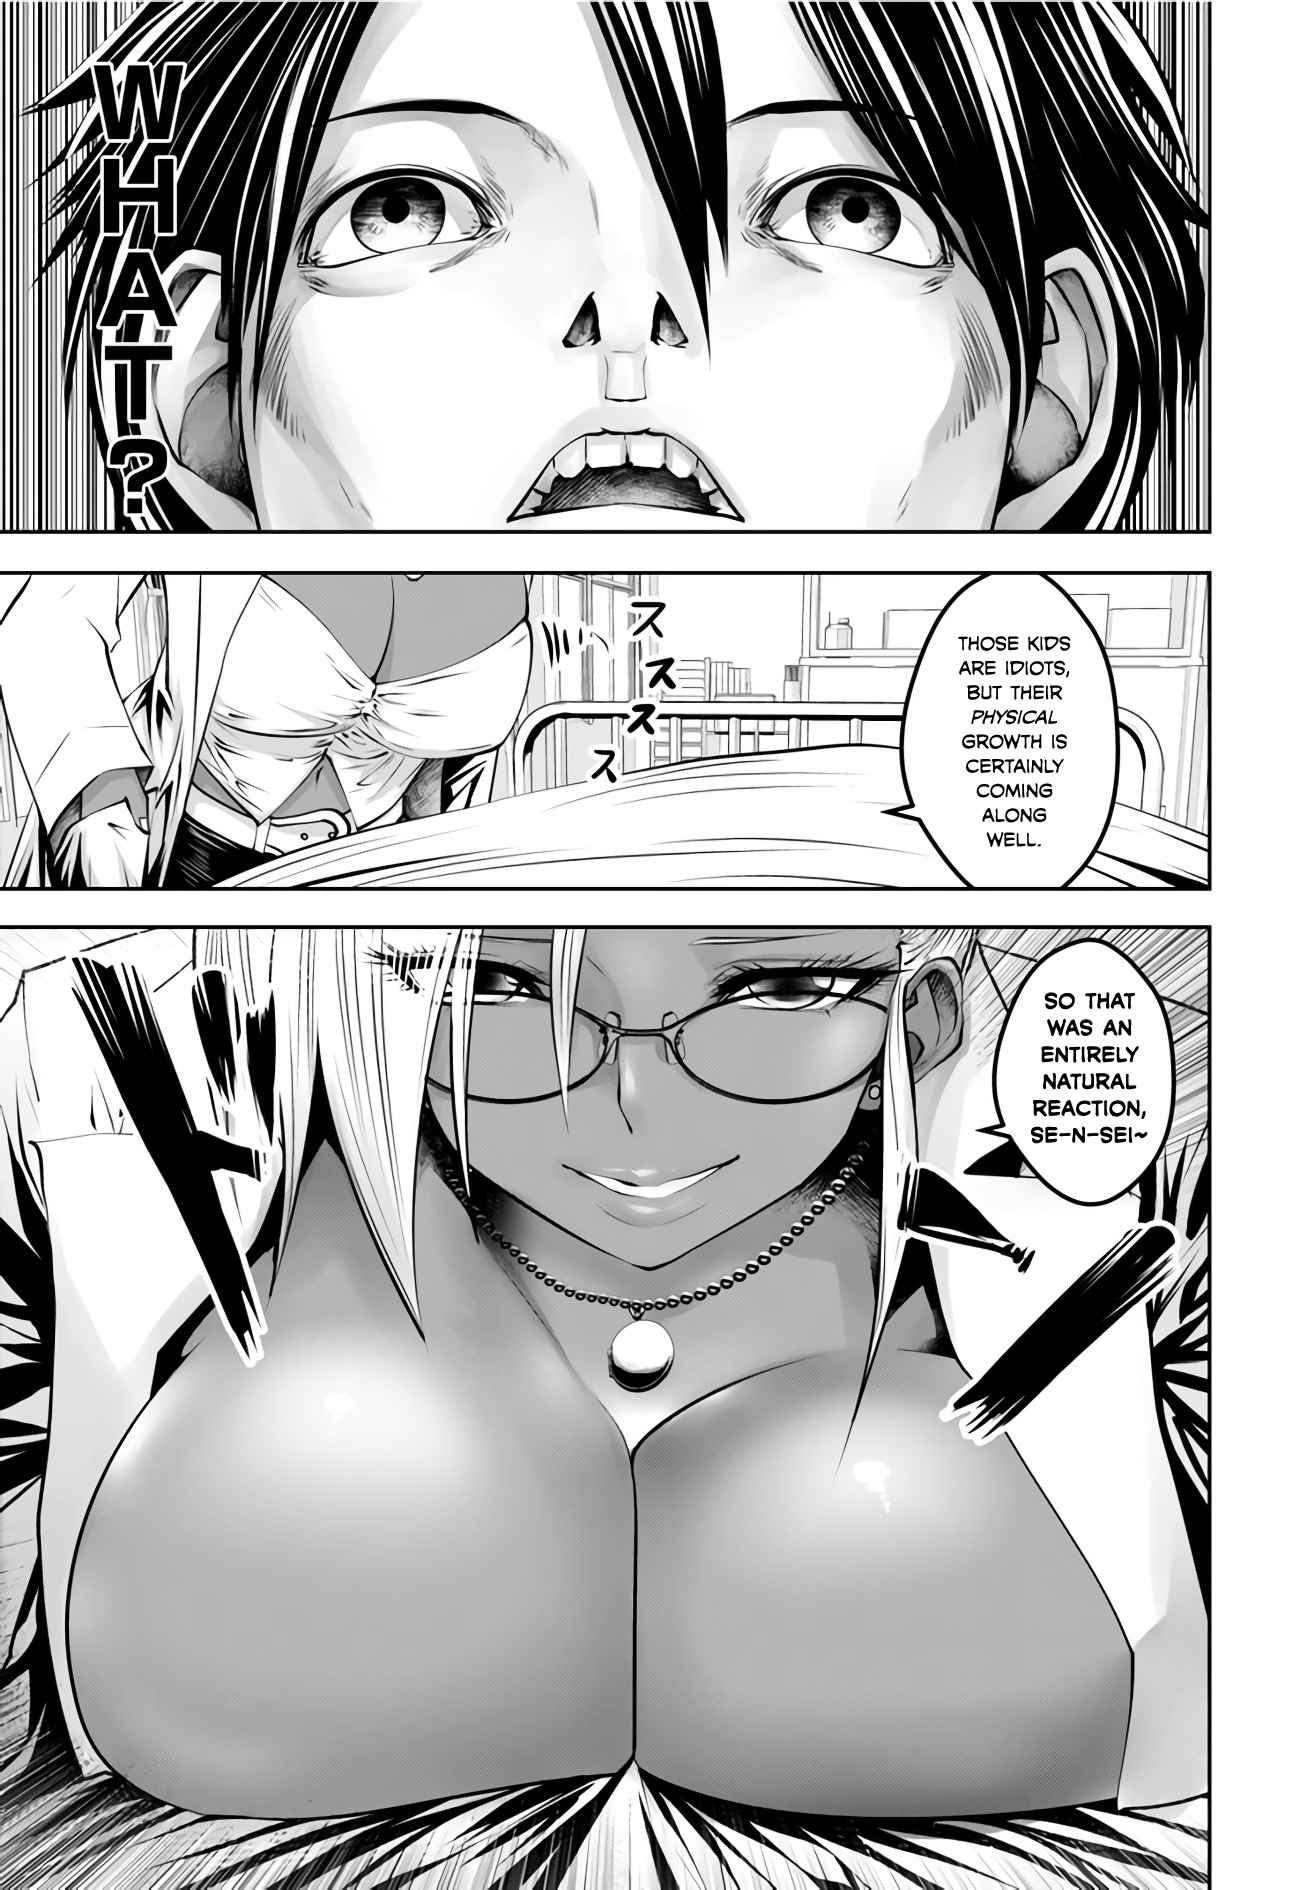 Black Gakkou ni Tsutomete Shimatta Sensei Vol. 1 Ch. 4 The arrival of the wild slut